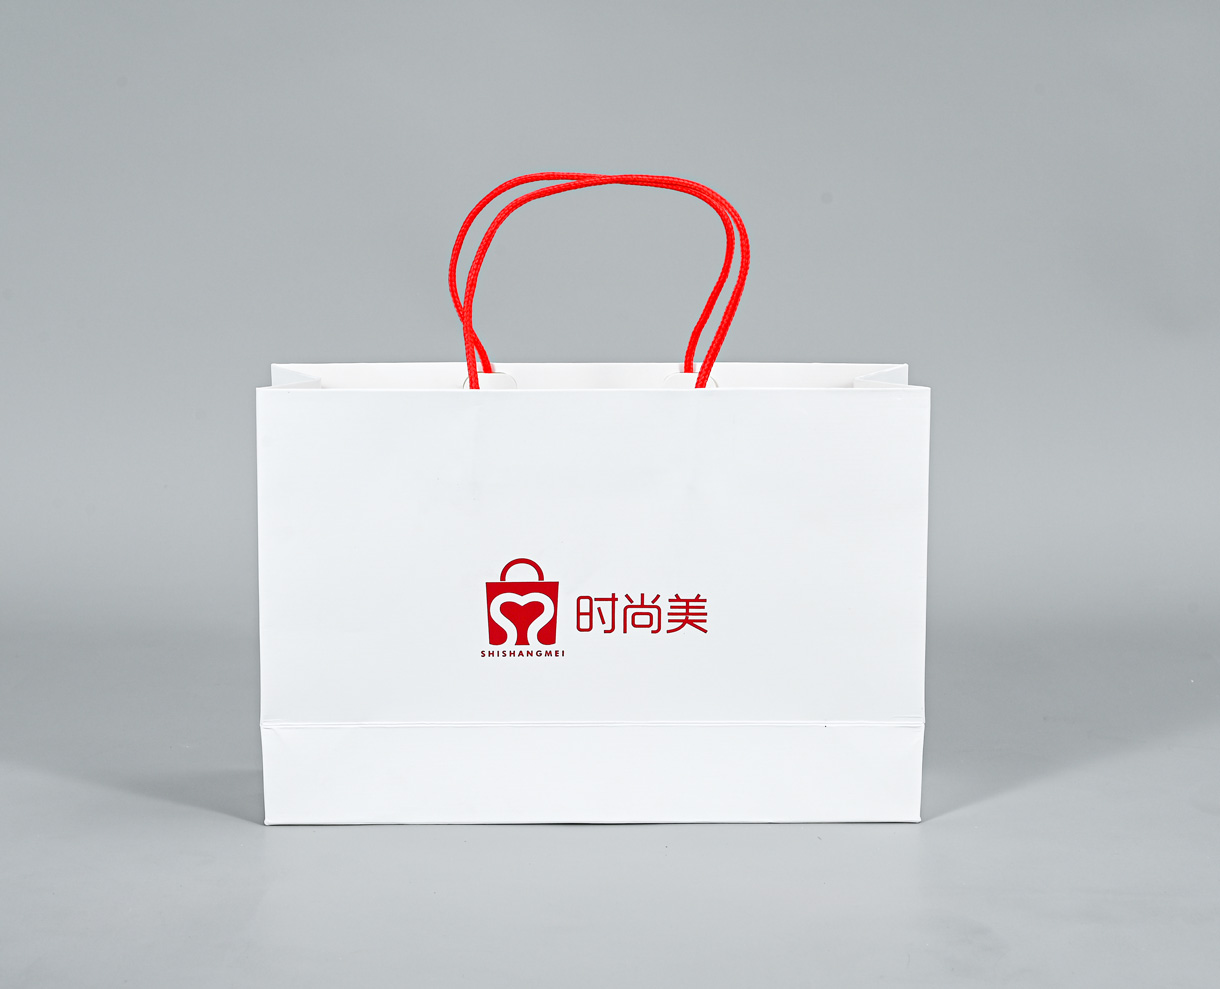 东莞市时尚美印刷有限公司将亮相SCTPE餐饮外卖包装展览会